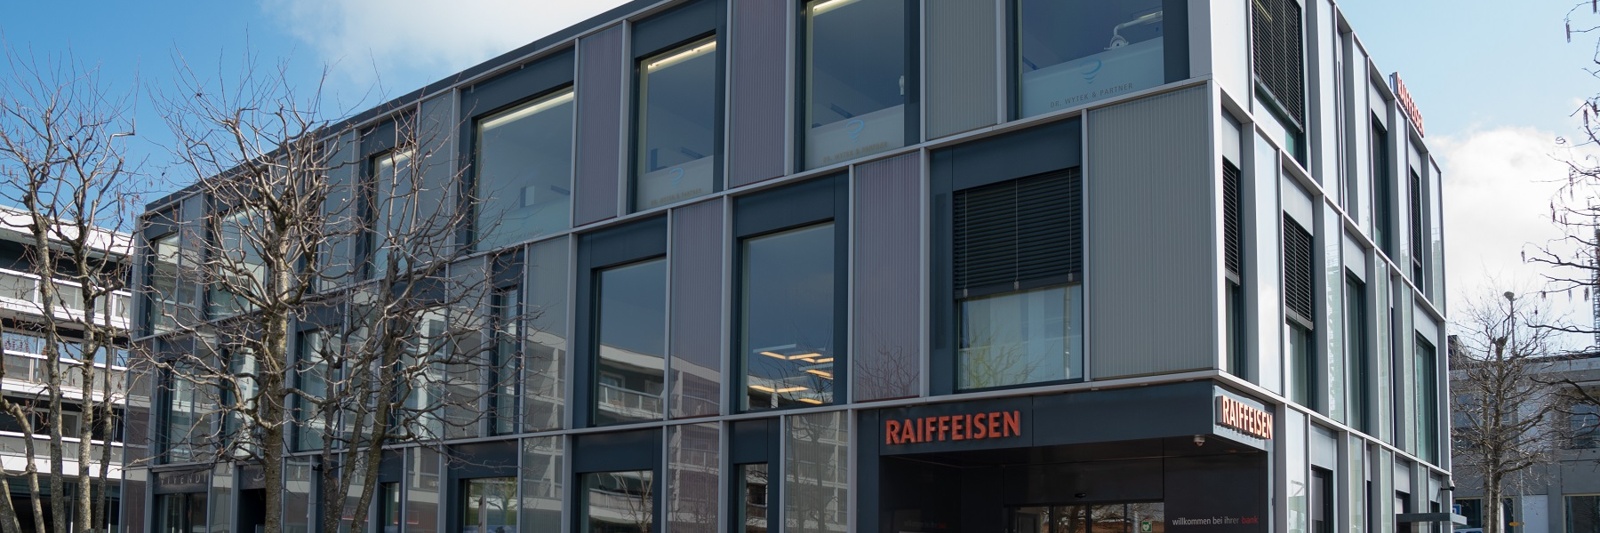 Raiffeisenbank Wittenbach-Häggenschwil